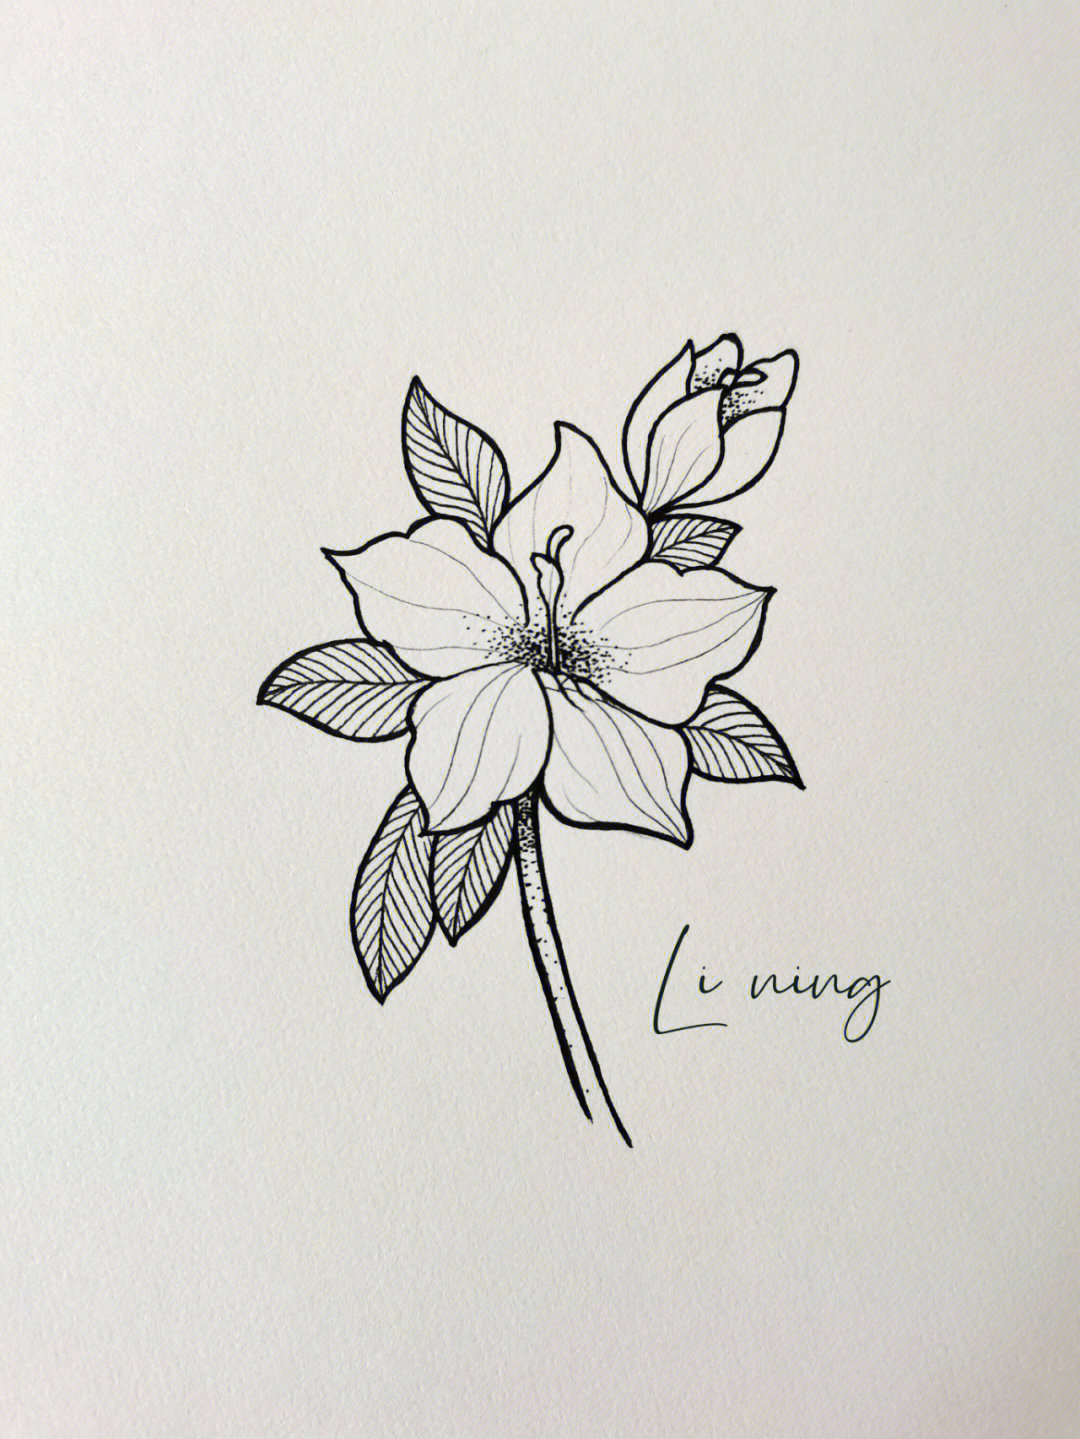 针管笔手绘花卉